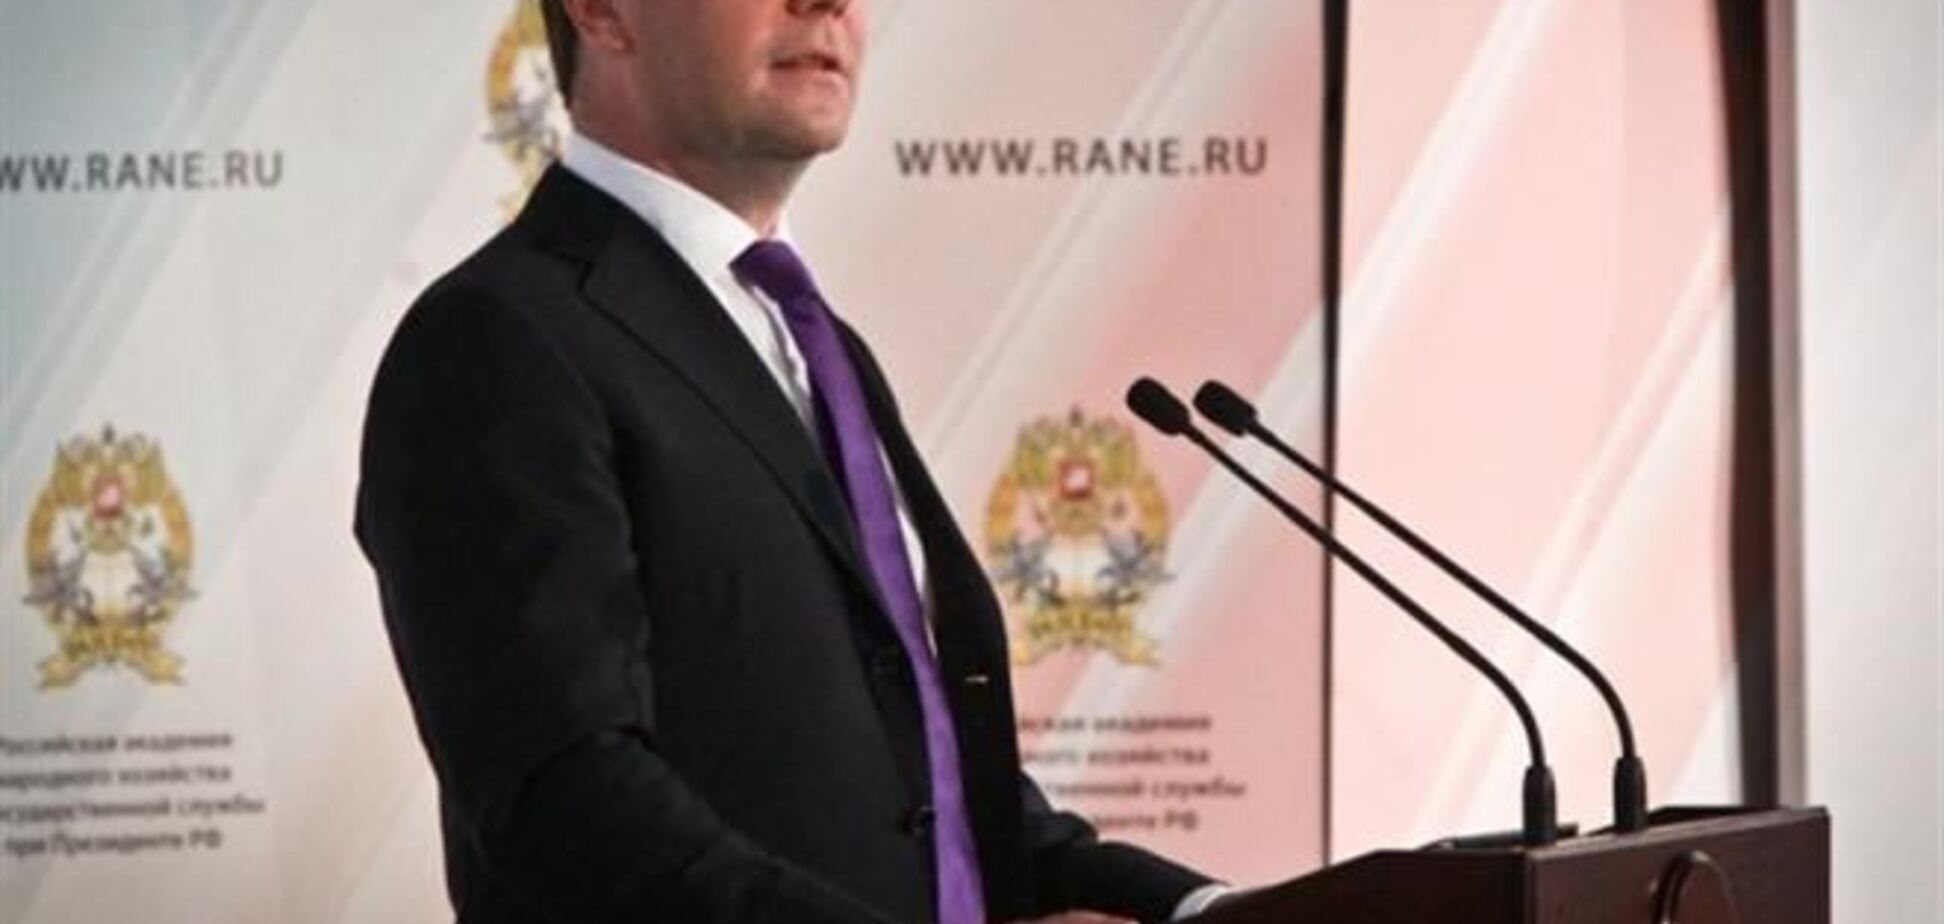 Иностранные политики грубо вмешиваются в дела Украины - Медведев